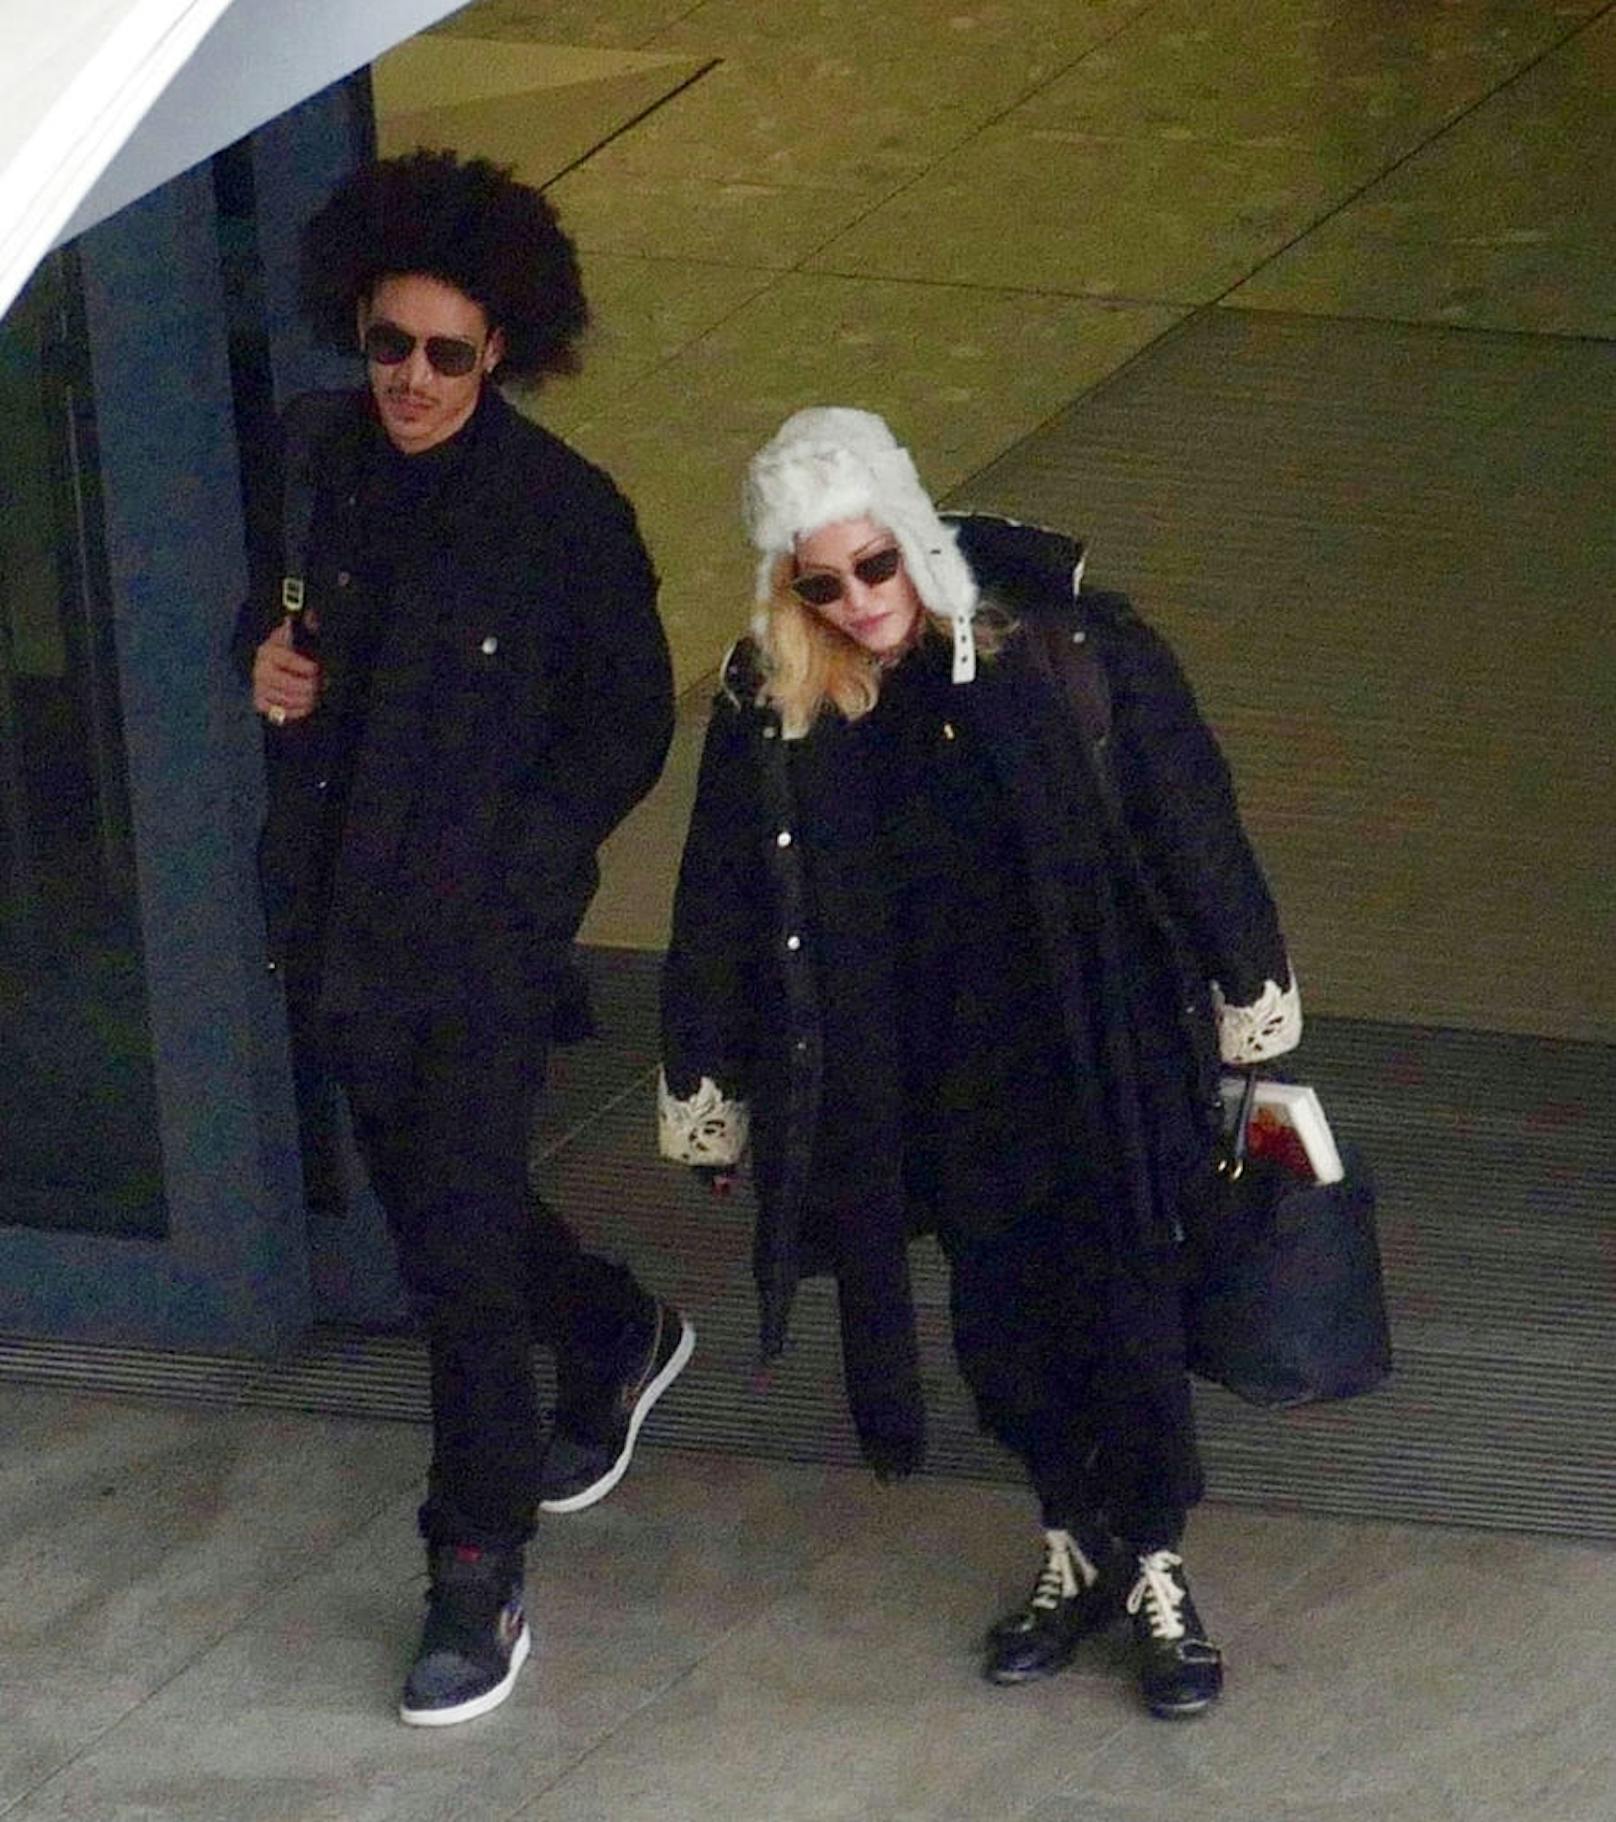 Sängerin Madonna mit ihrem Ex-Freund Ahlamalik Williams in London